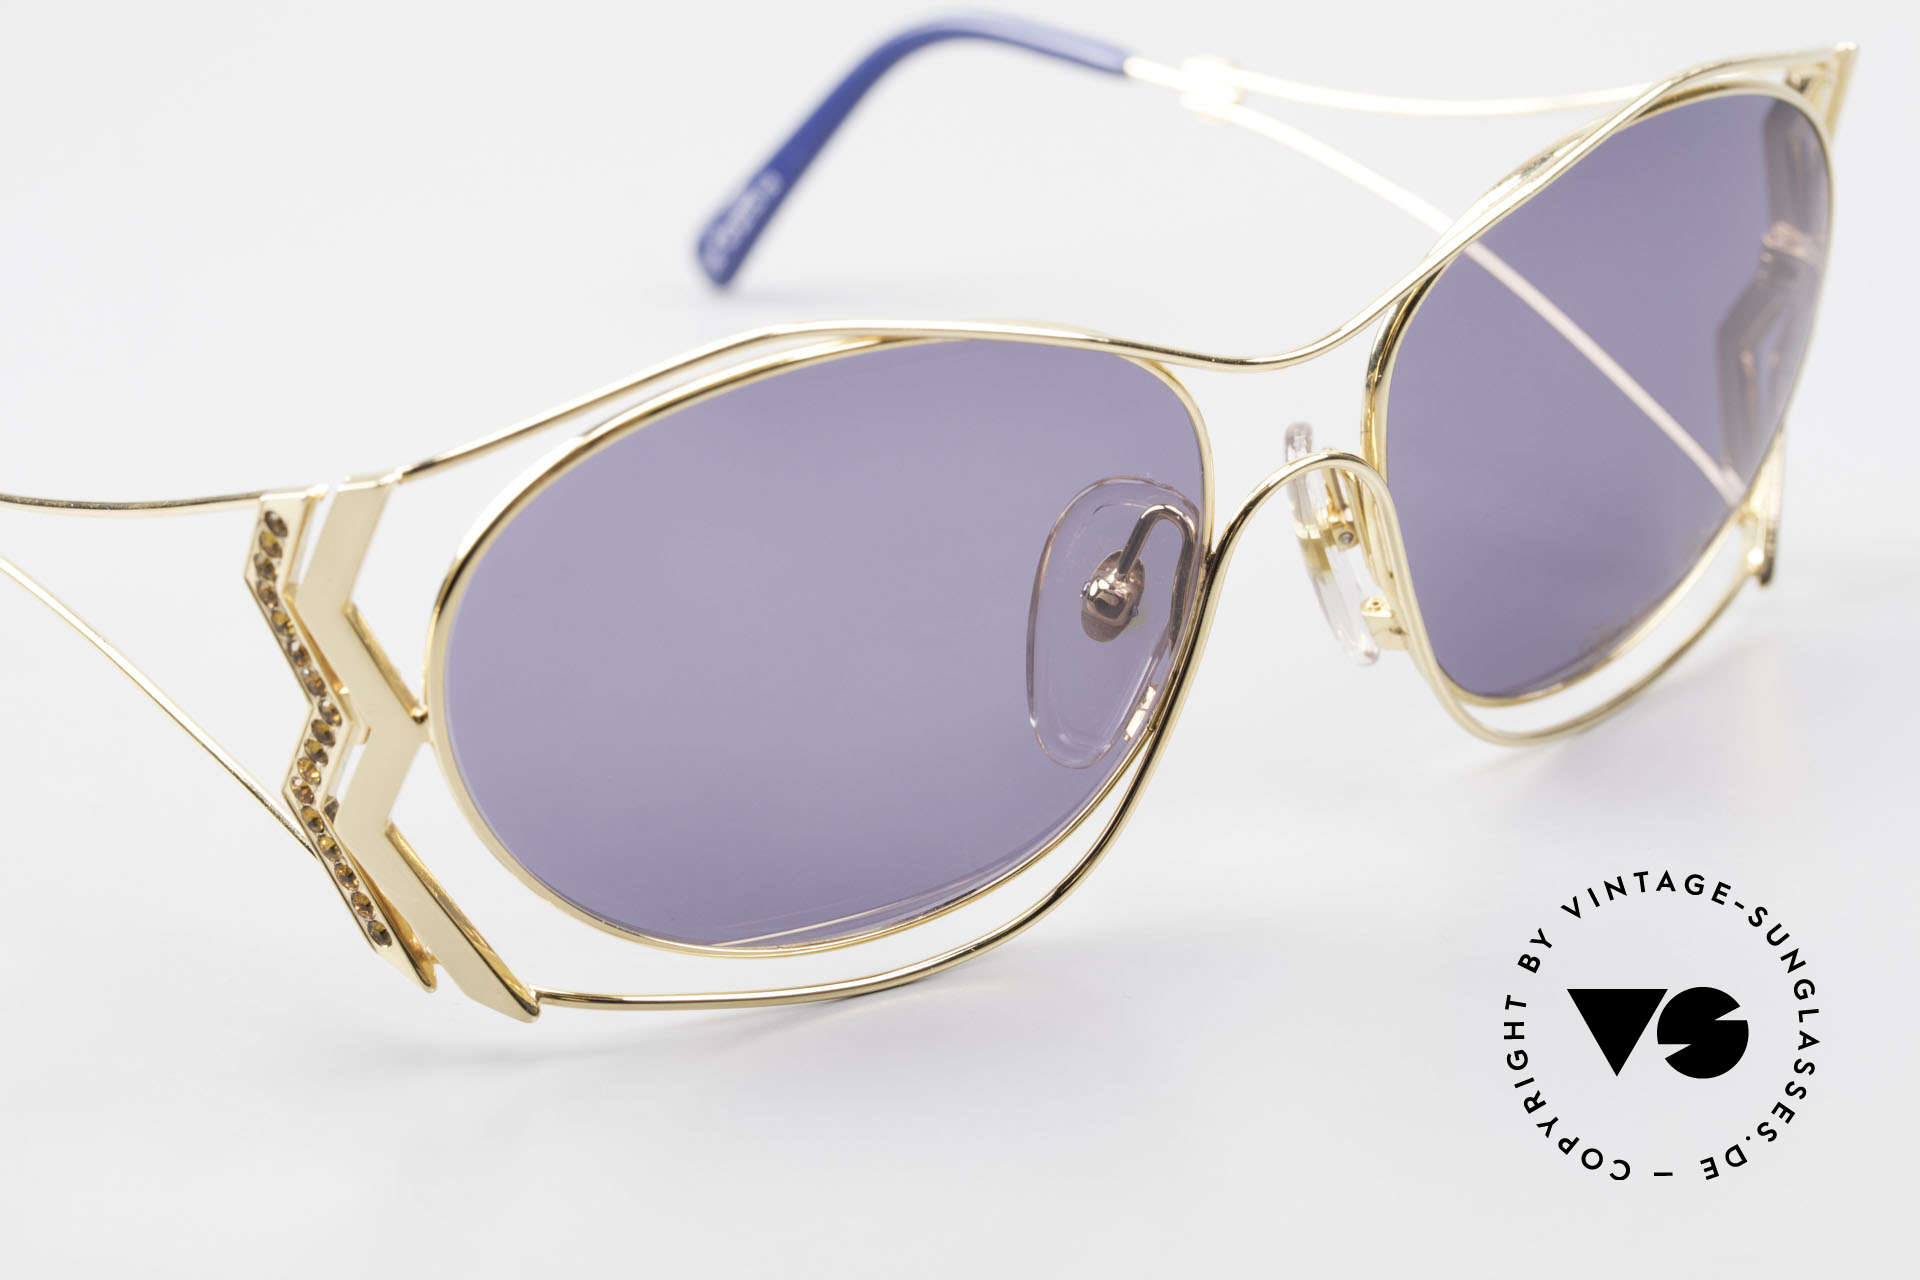 Paloma Picasso 3707 90's Sunglasses Gold-Plated, NO retro sunglasses; a unique authentic 90's original, Made for Women